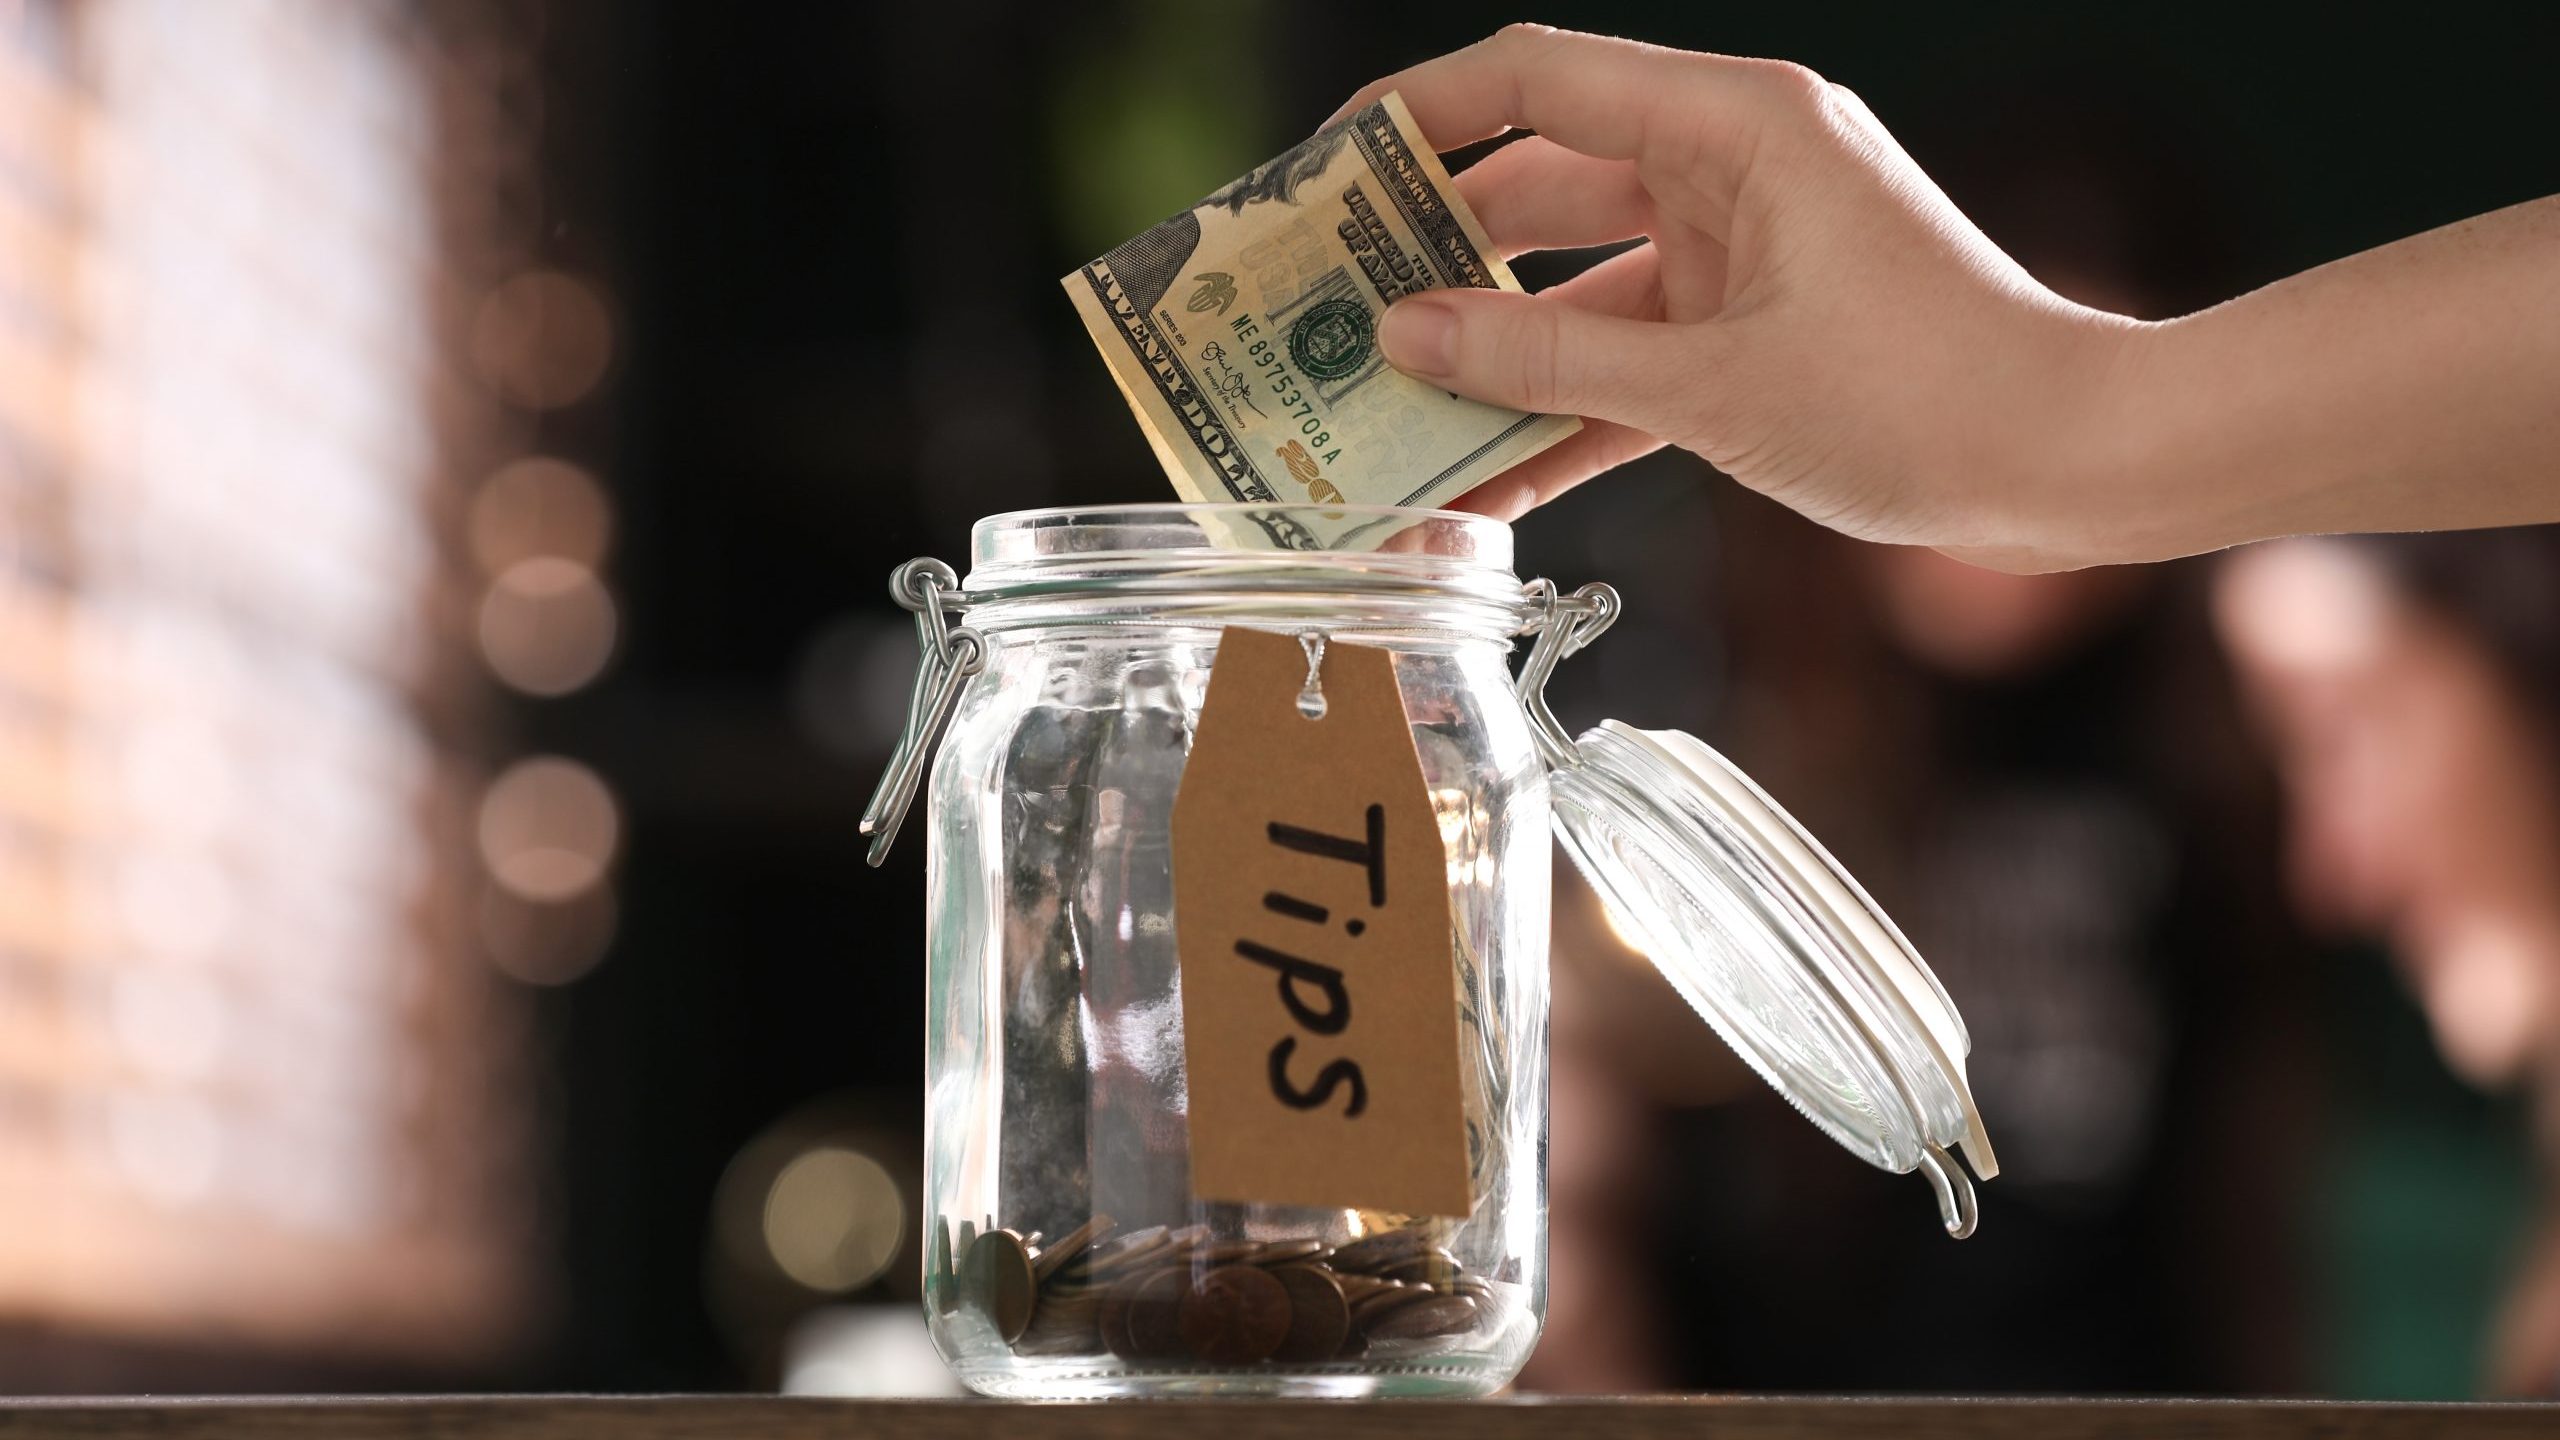 Woman puts tip in jar